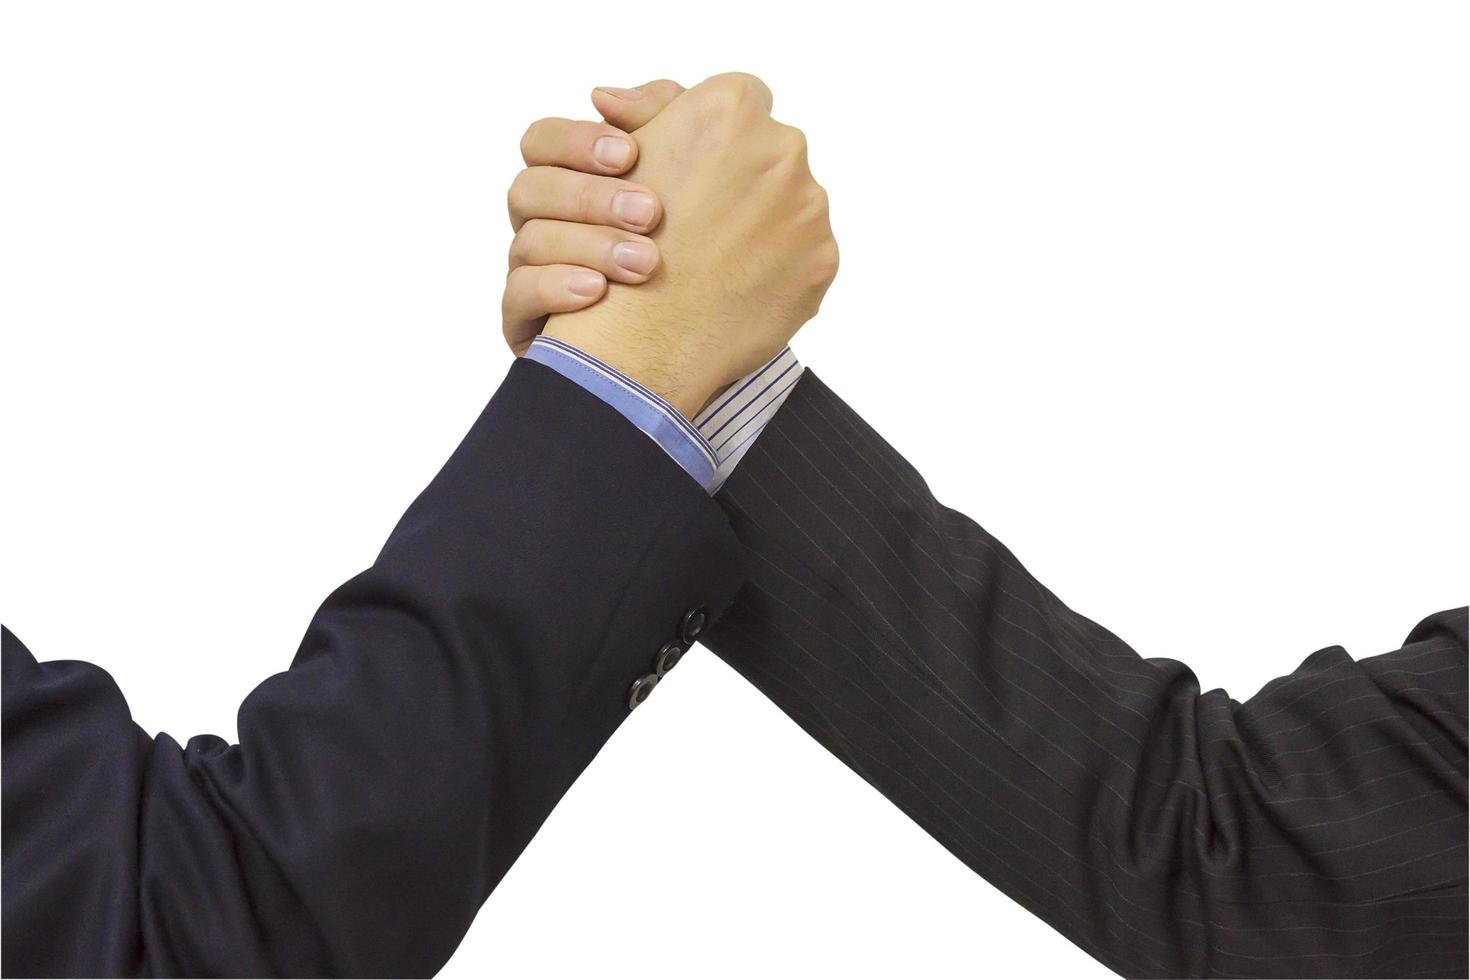 close-up de dois homens de negócios apertar as mãos firmemente isoladas sobre o branco. foto inclui traçado de recorte.